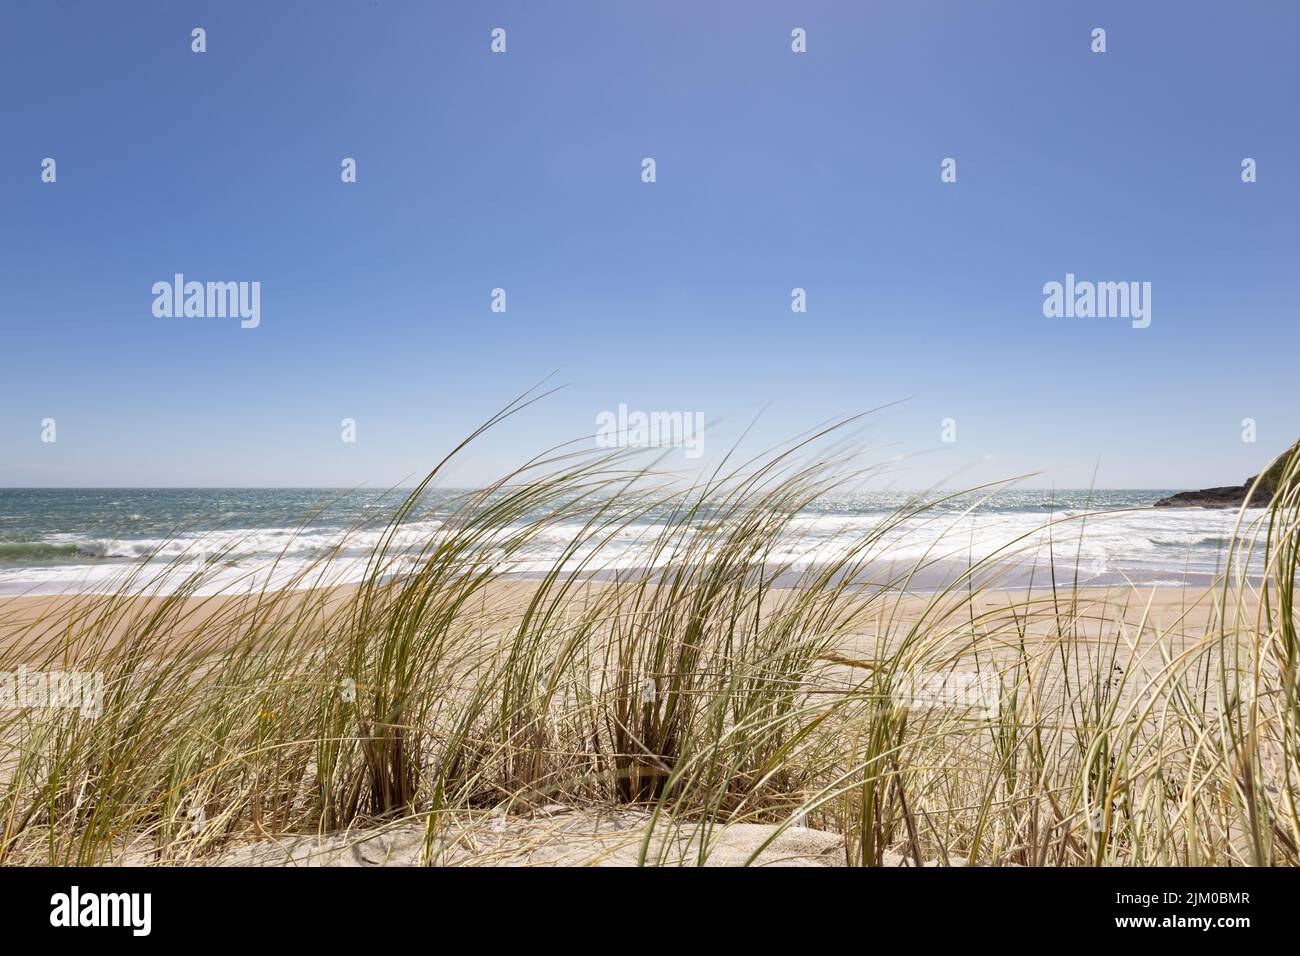 Une belle scène de l'herbe de Marram européenne sur une plage de sable au bord de l'eau avec le ciel bleu à l'horizon Banque D'Images